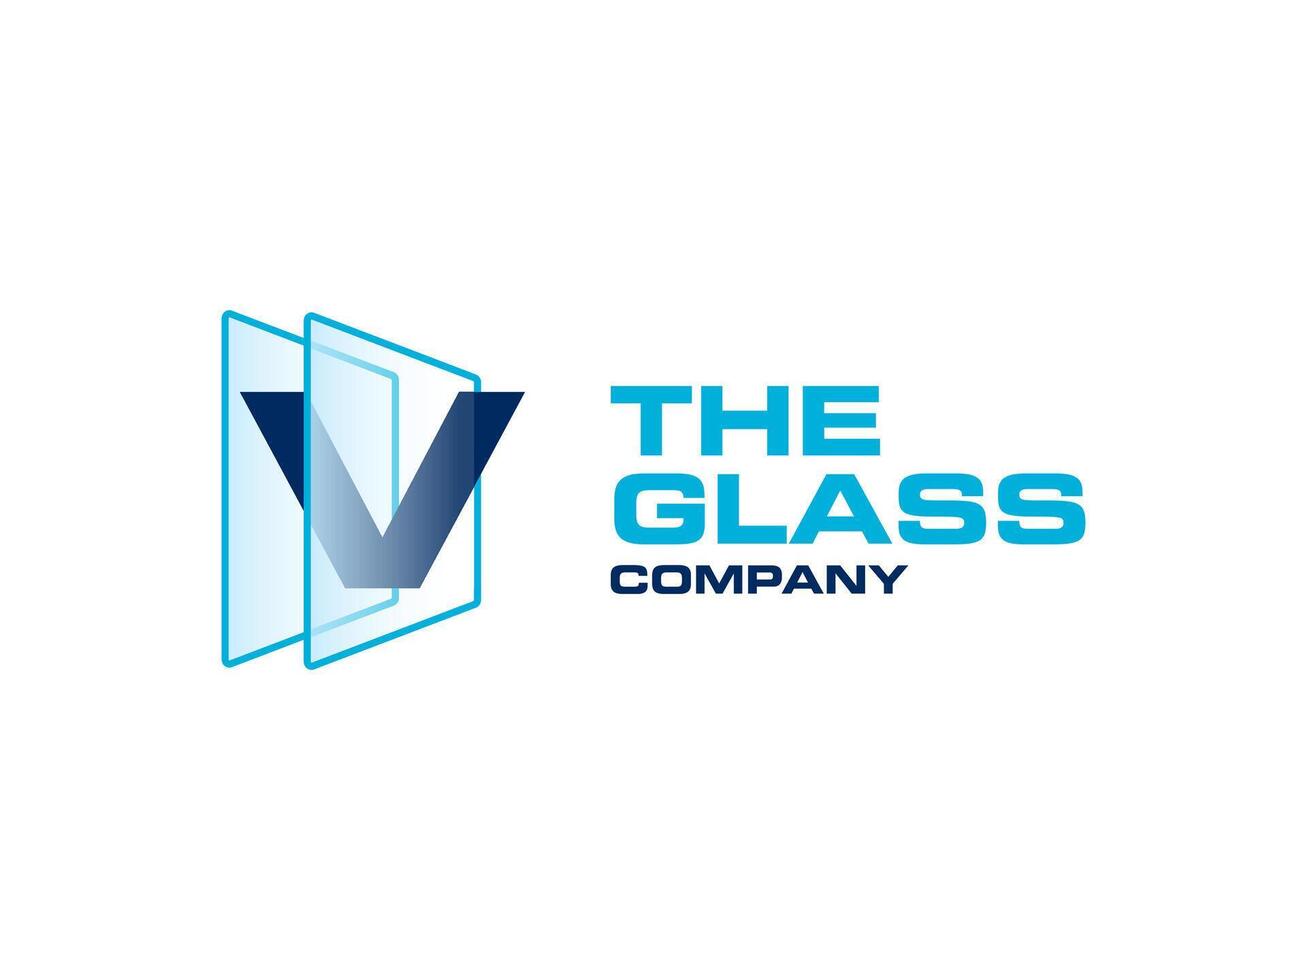 Créatif lettre v verre pour entreprise logo, lettre par cristal verre travaux symbole vecteur